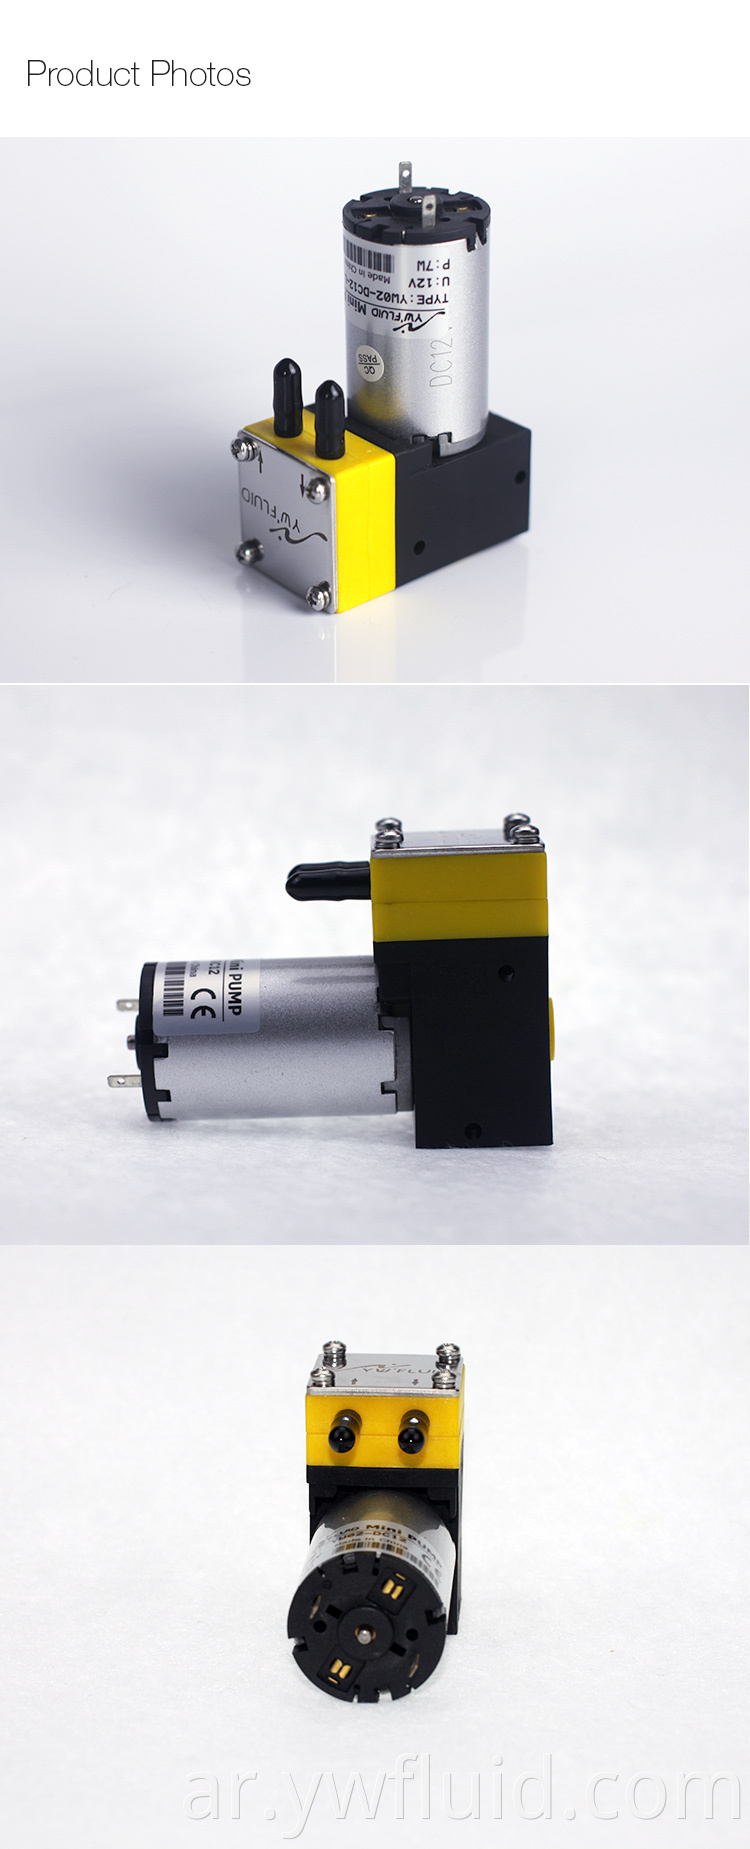 YWfluid 12V 24V مضخة الطباعة الرقمية النافثة للحبر الكيميائية المقاومة مع محرك DC المستخدمة في صناعة المنسوجات